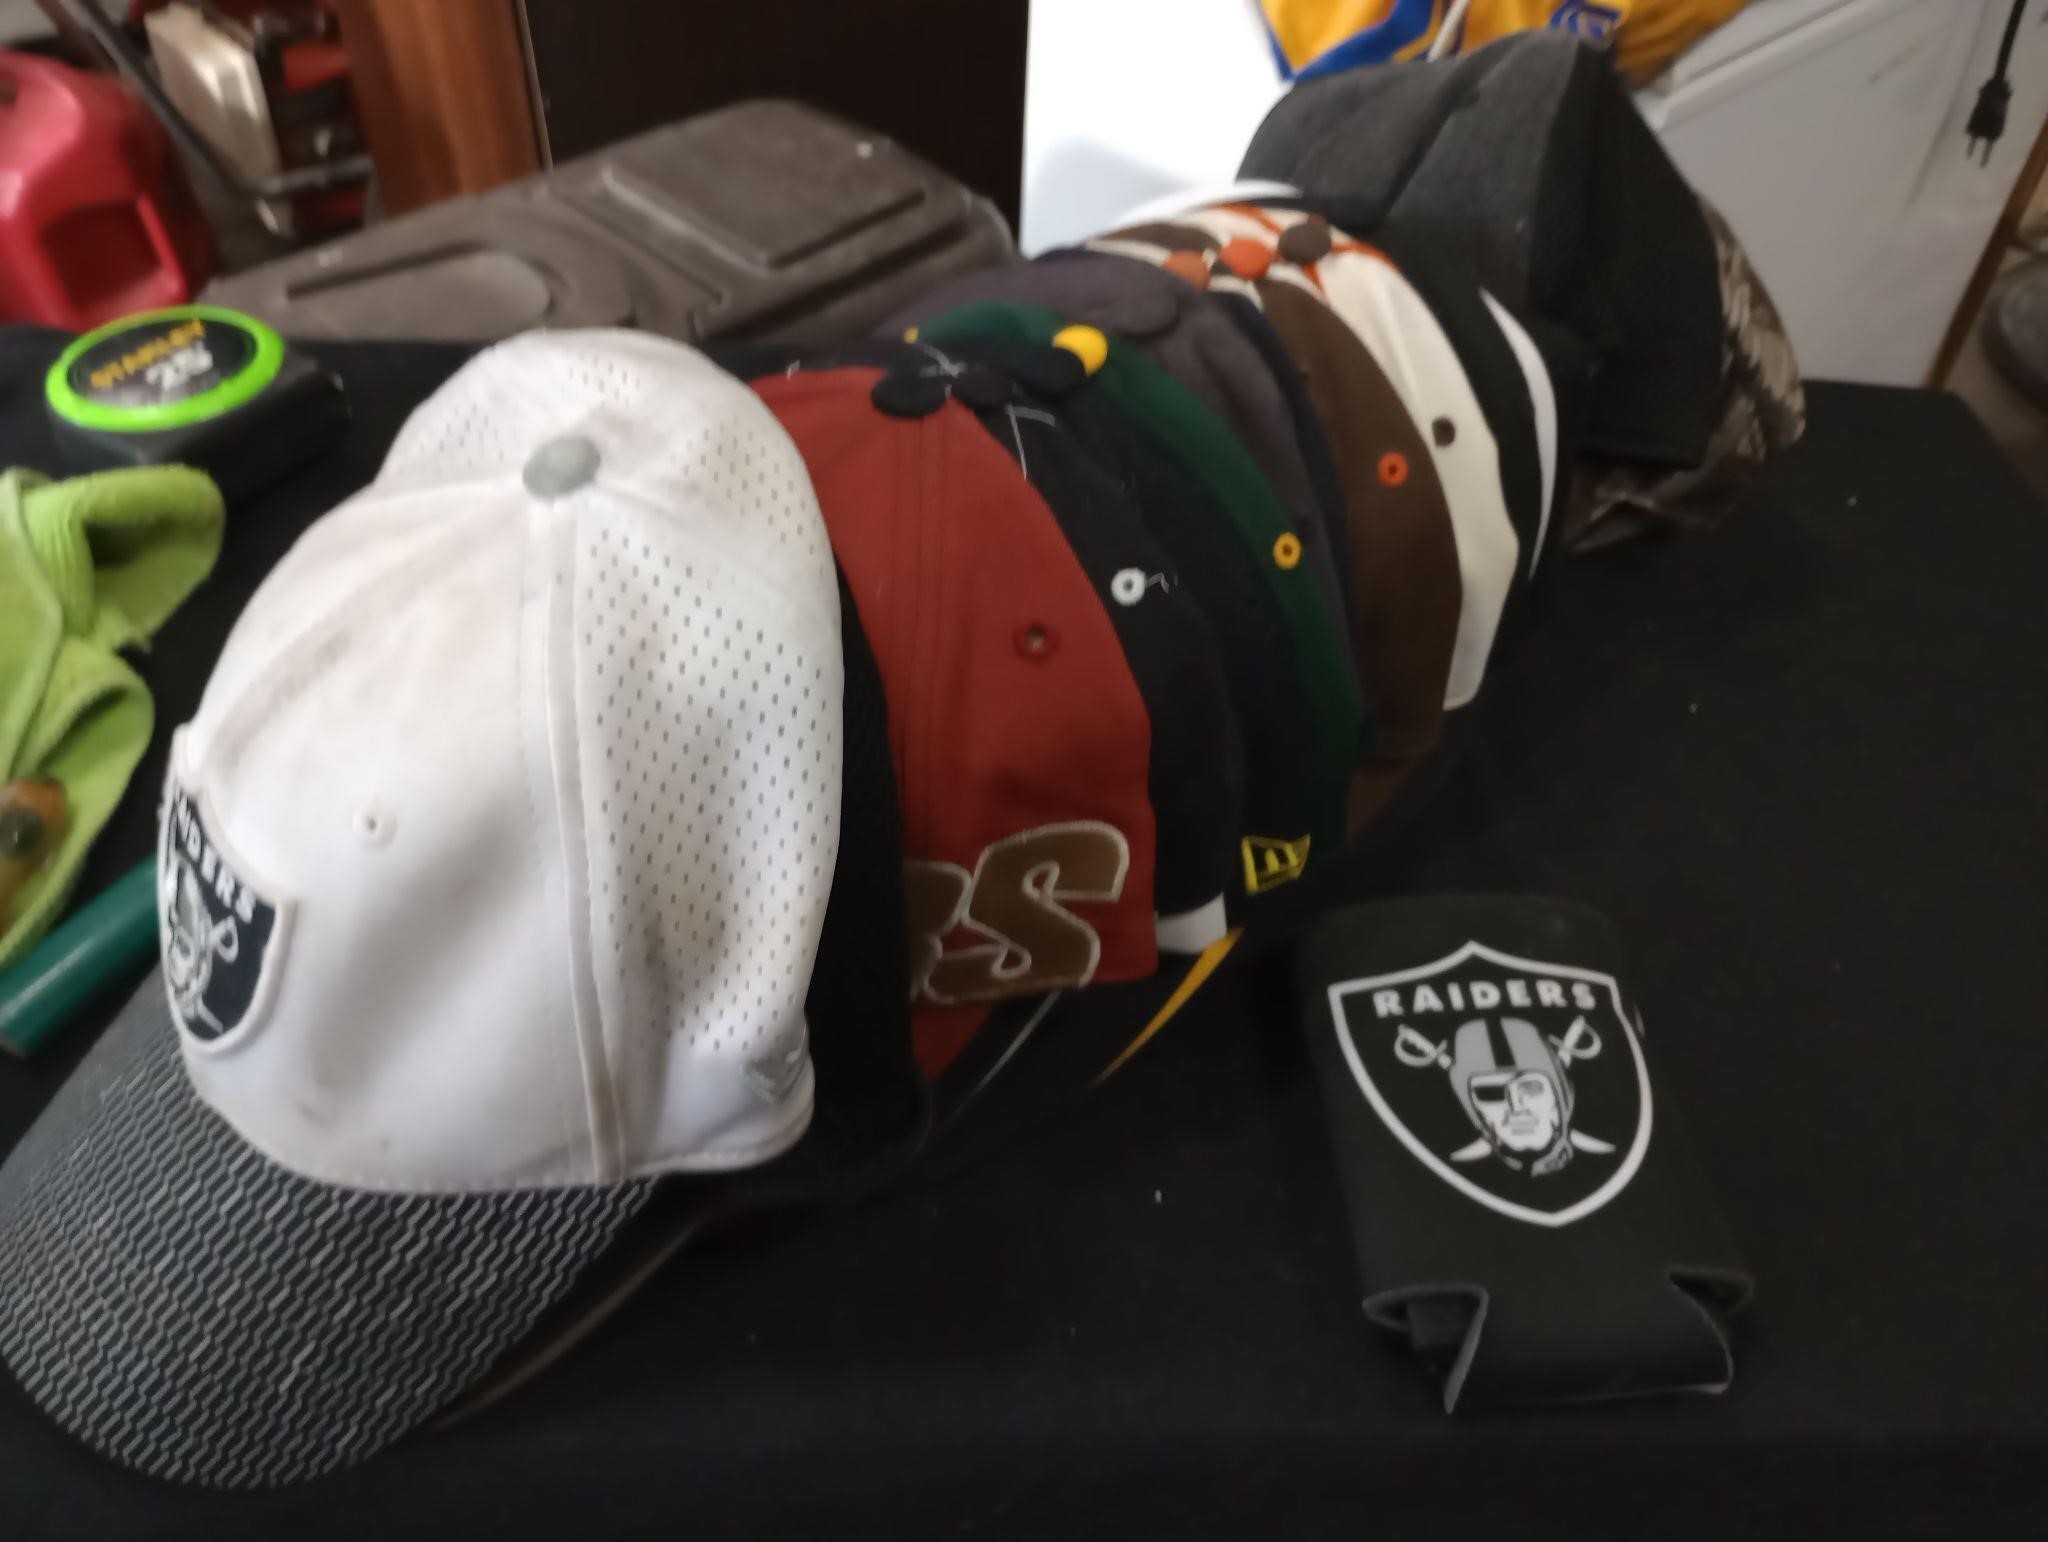 Football / baseball hats